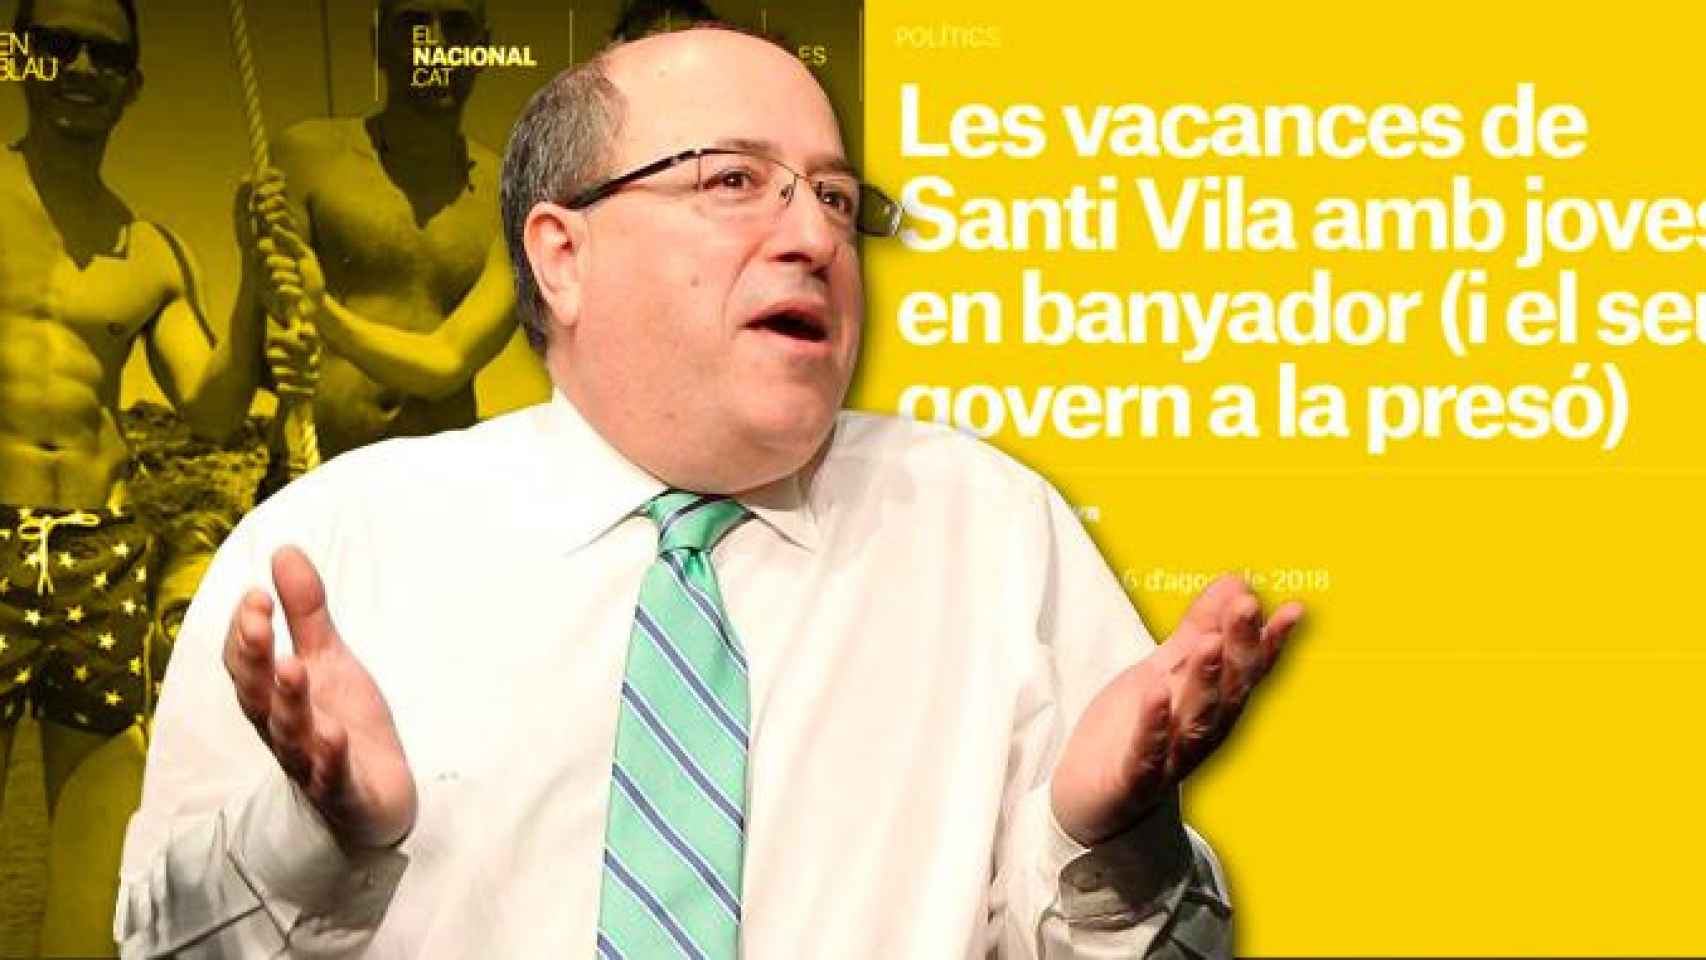 José Antich, director de 'El Nacional', y la versión suavizada del artículo que denigraba a Santi Vila por su condición sexual / FOTOMONTAJE CG